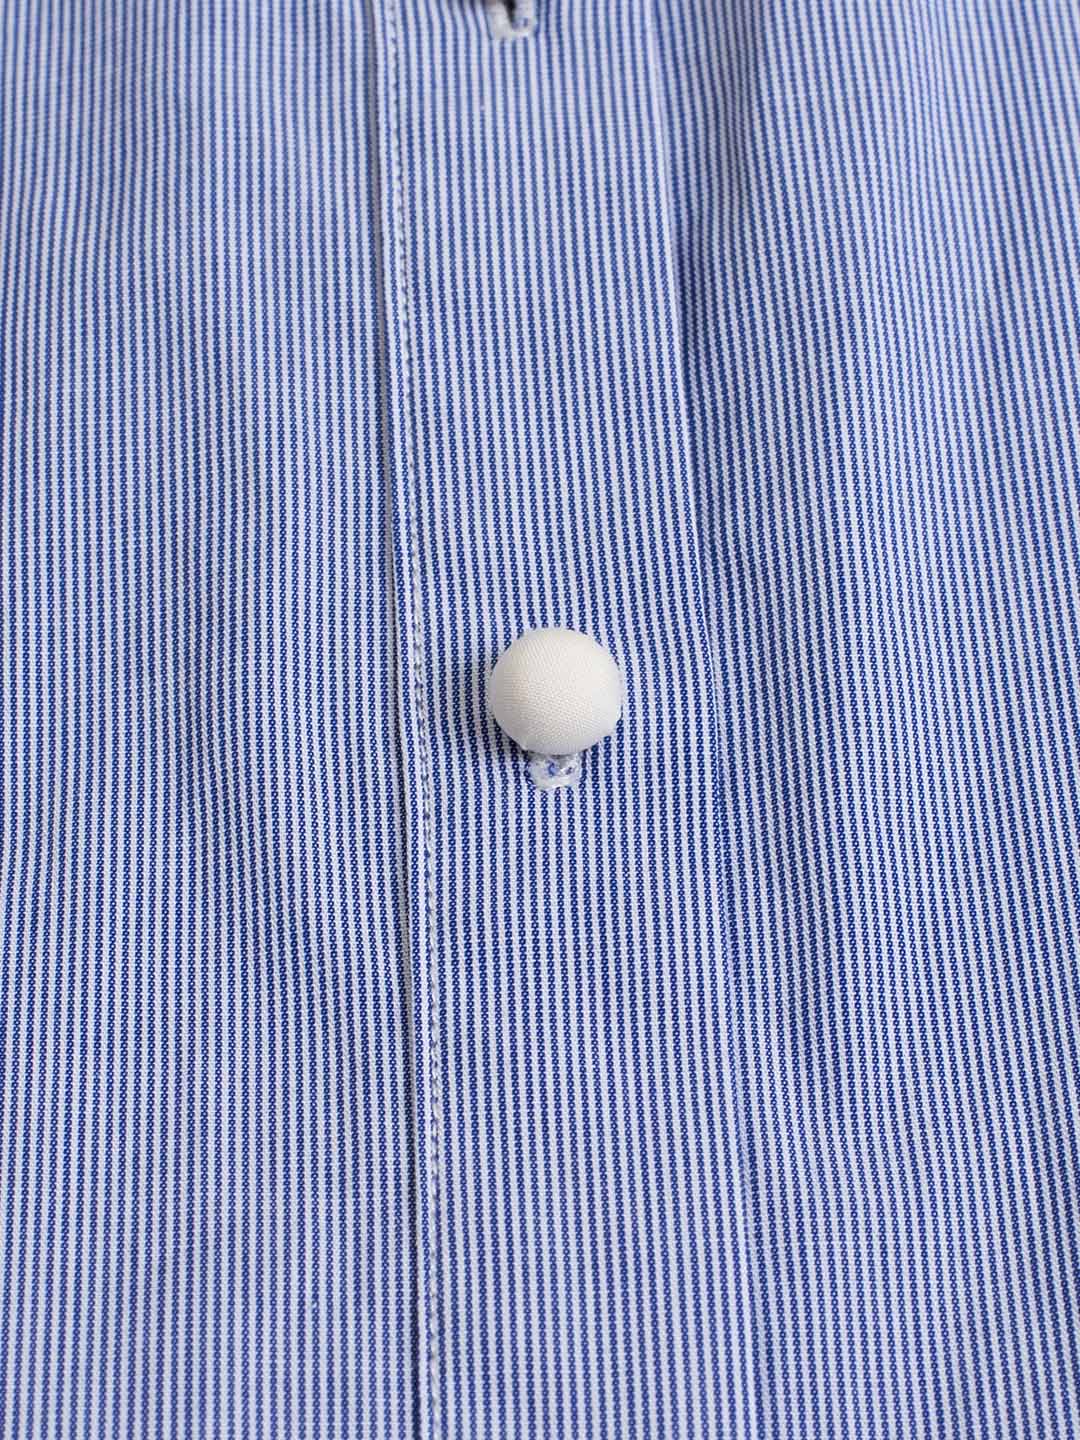 Luz 藍白條紋彼得潘領撞色襯衫